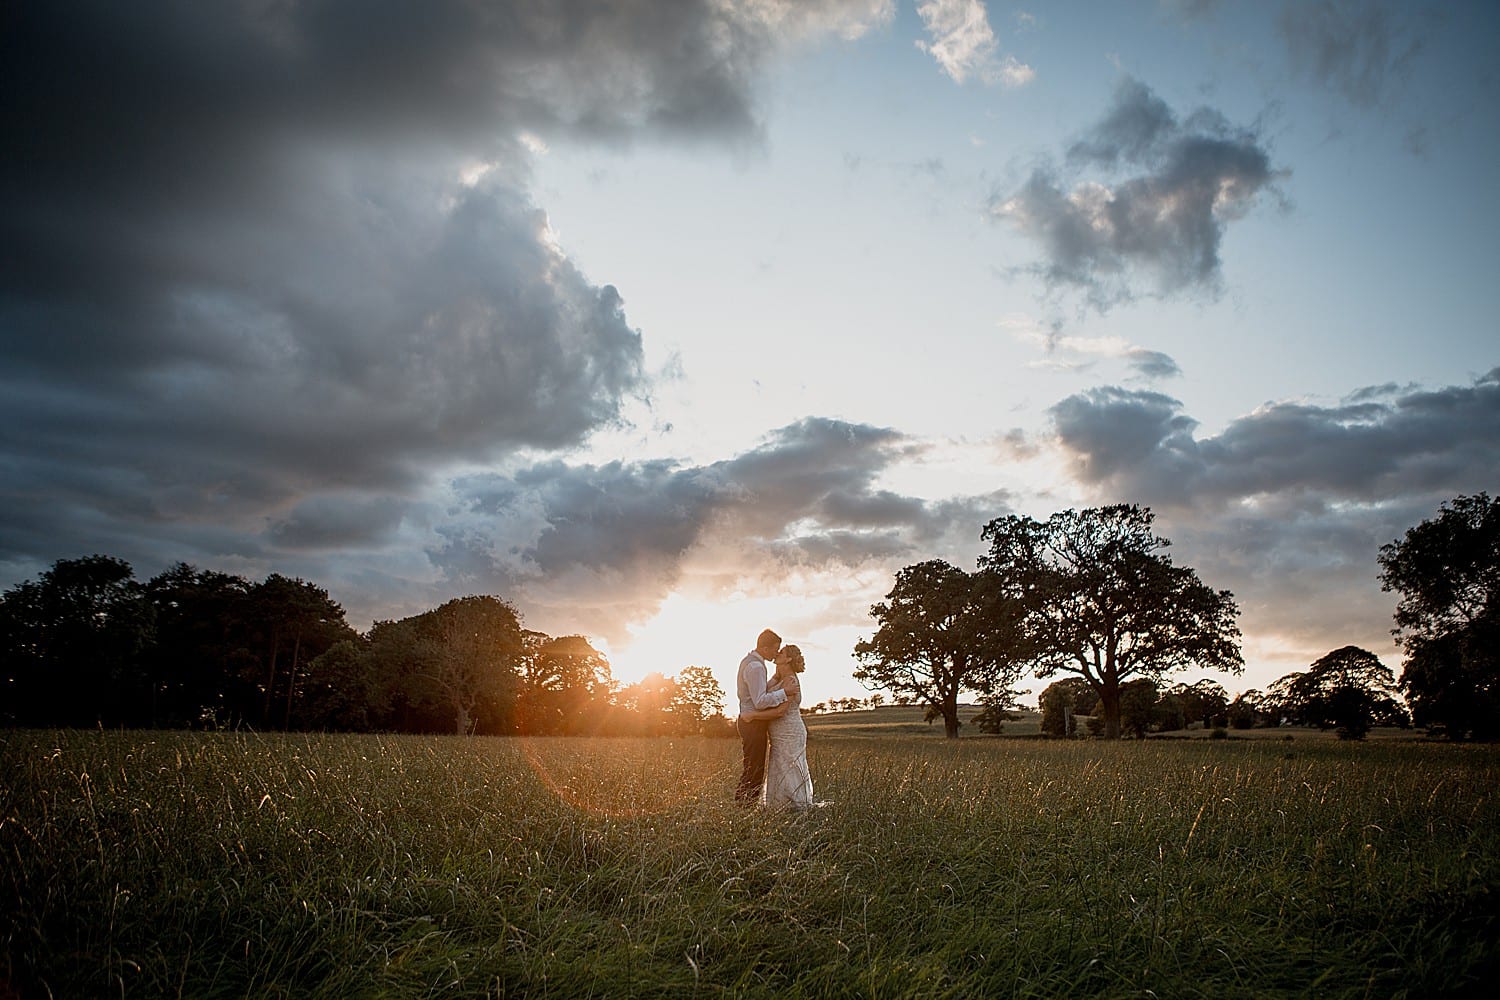 buddileigh farm wedding photography